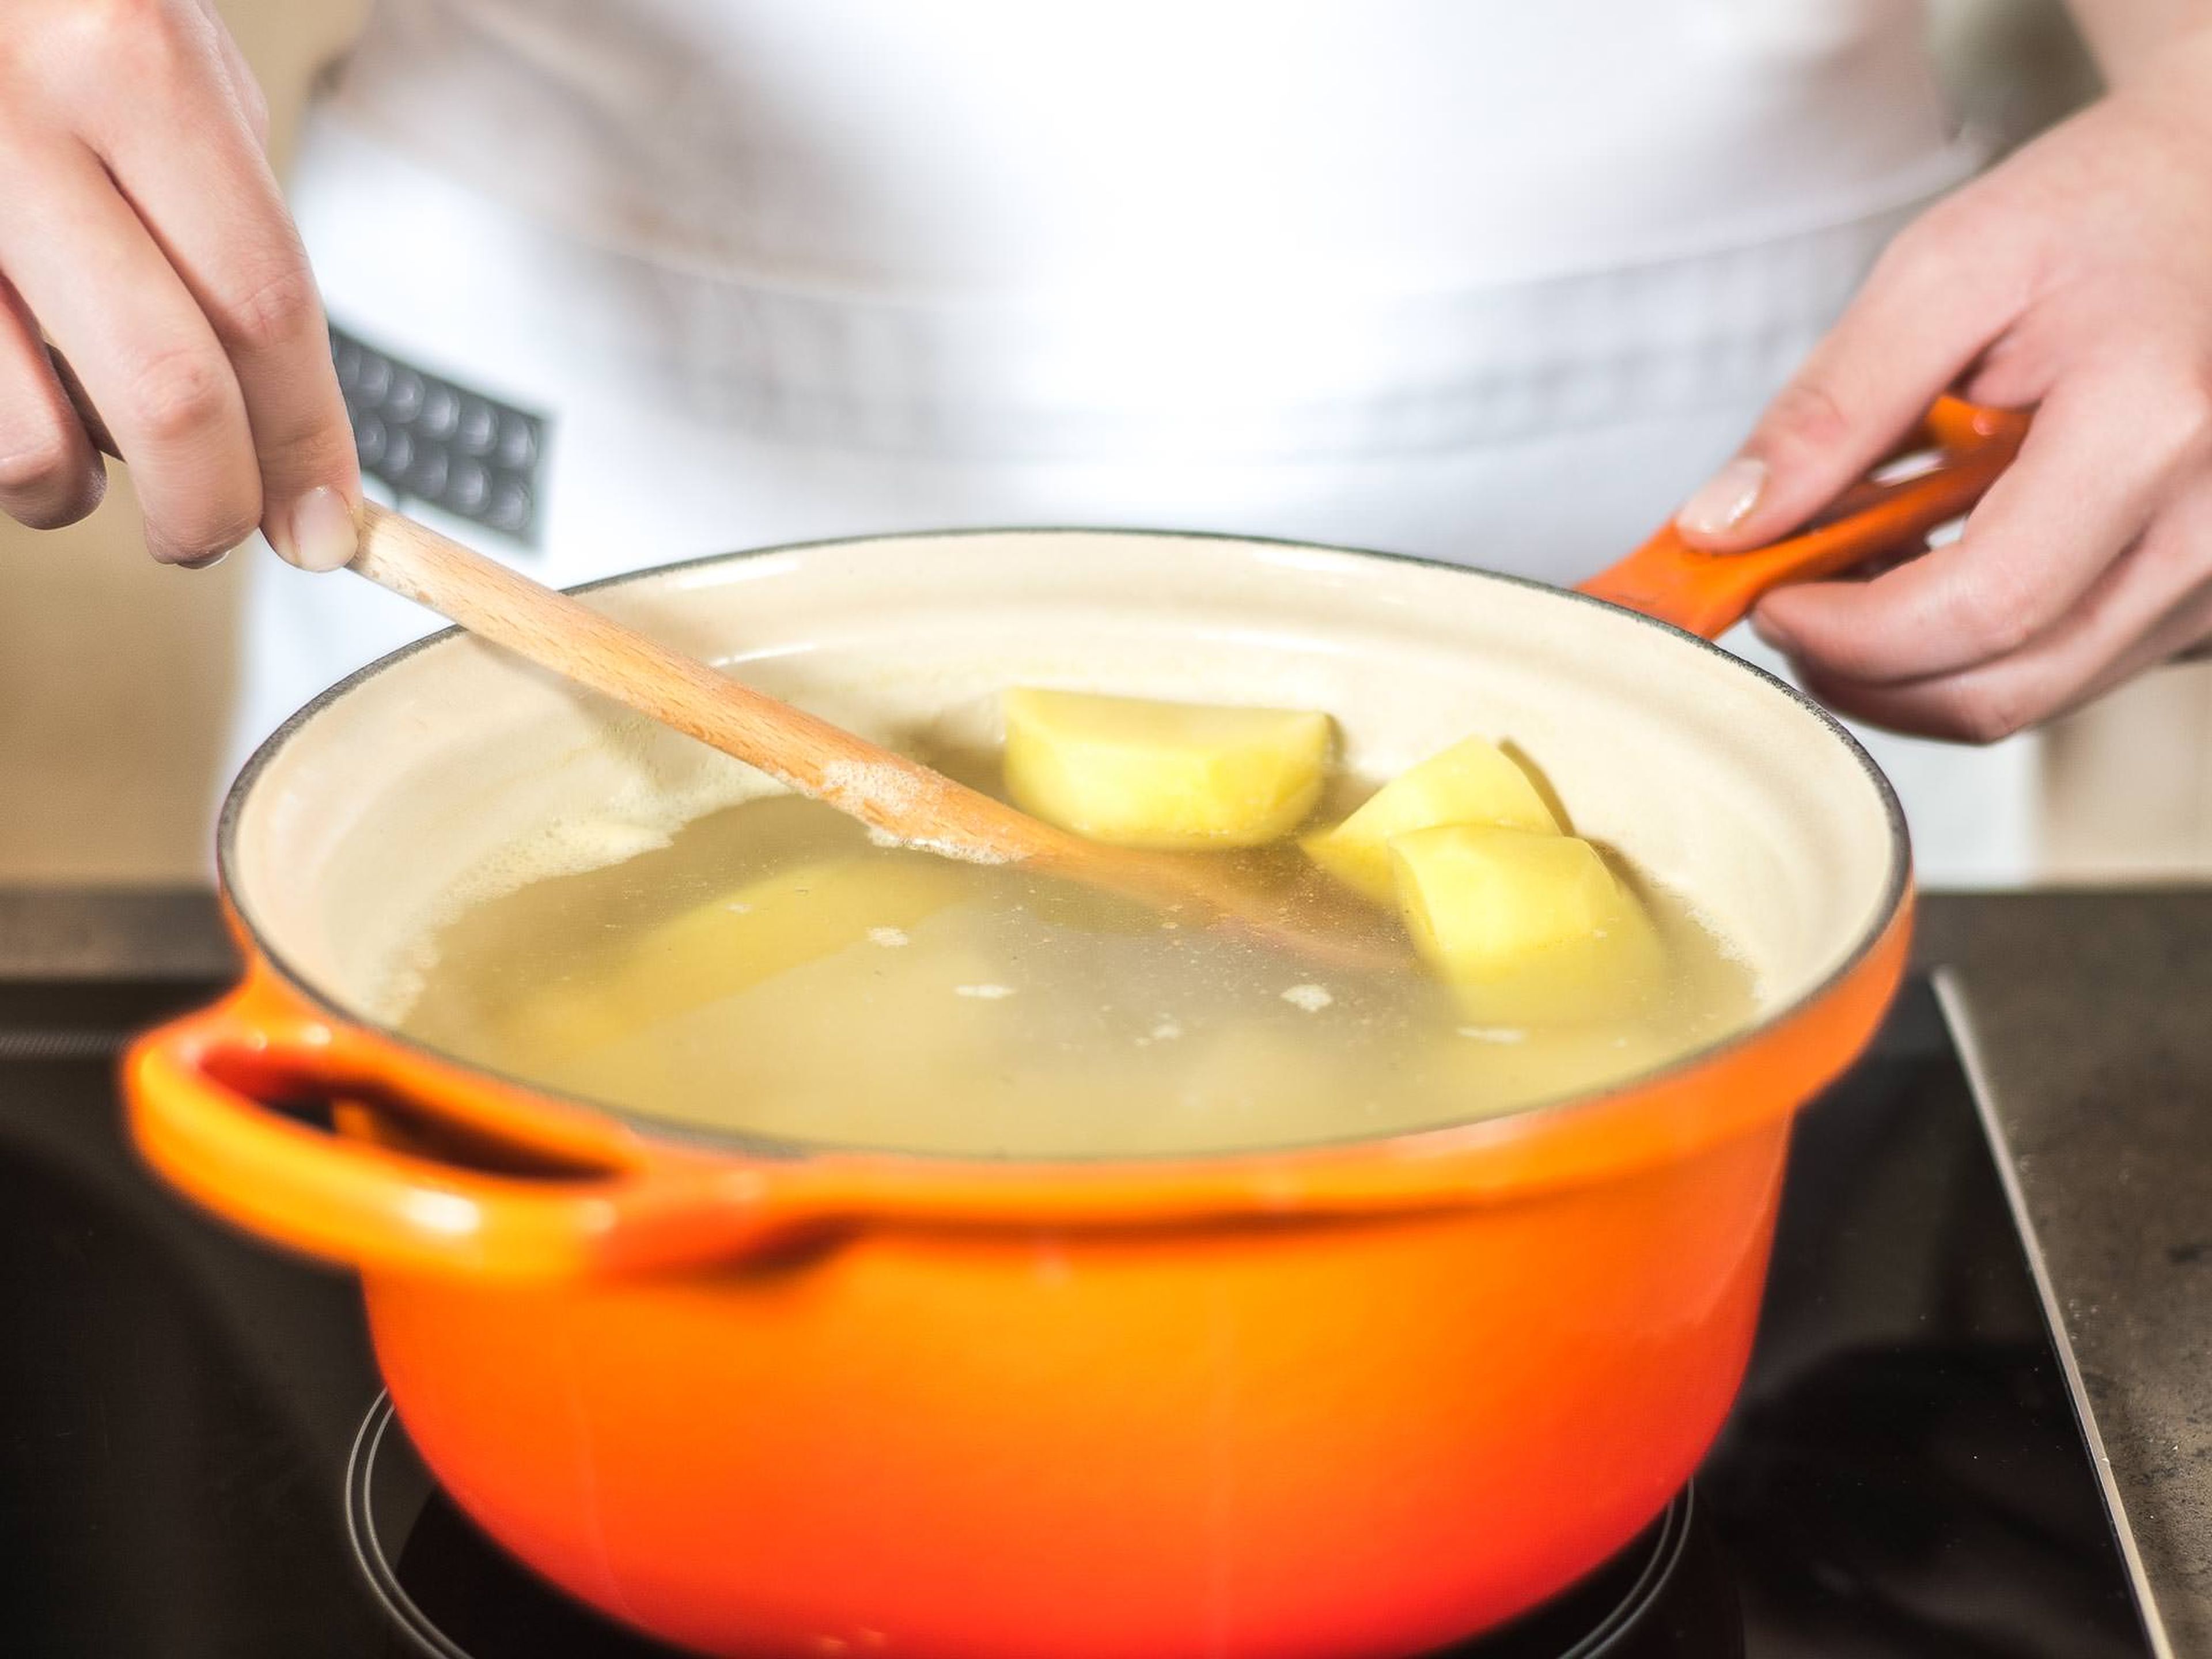 Backofen auf 180°C vorheizen. Kartoffeln schälen, halbieren und im Salzwasser je nach Größe für ca. 20 – 25 Min. gar kochen. Anschließend abgießen und zum Warmhalten zurück in den Topf geben.